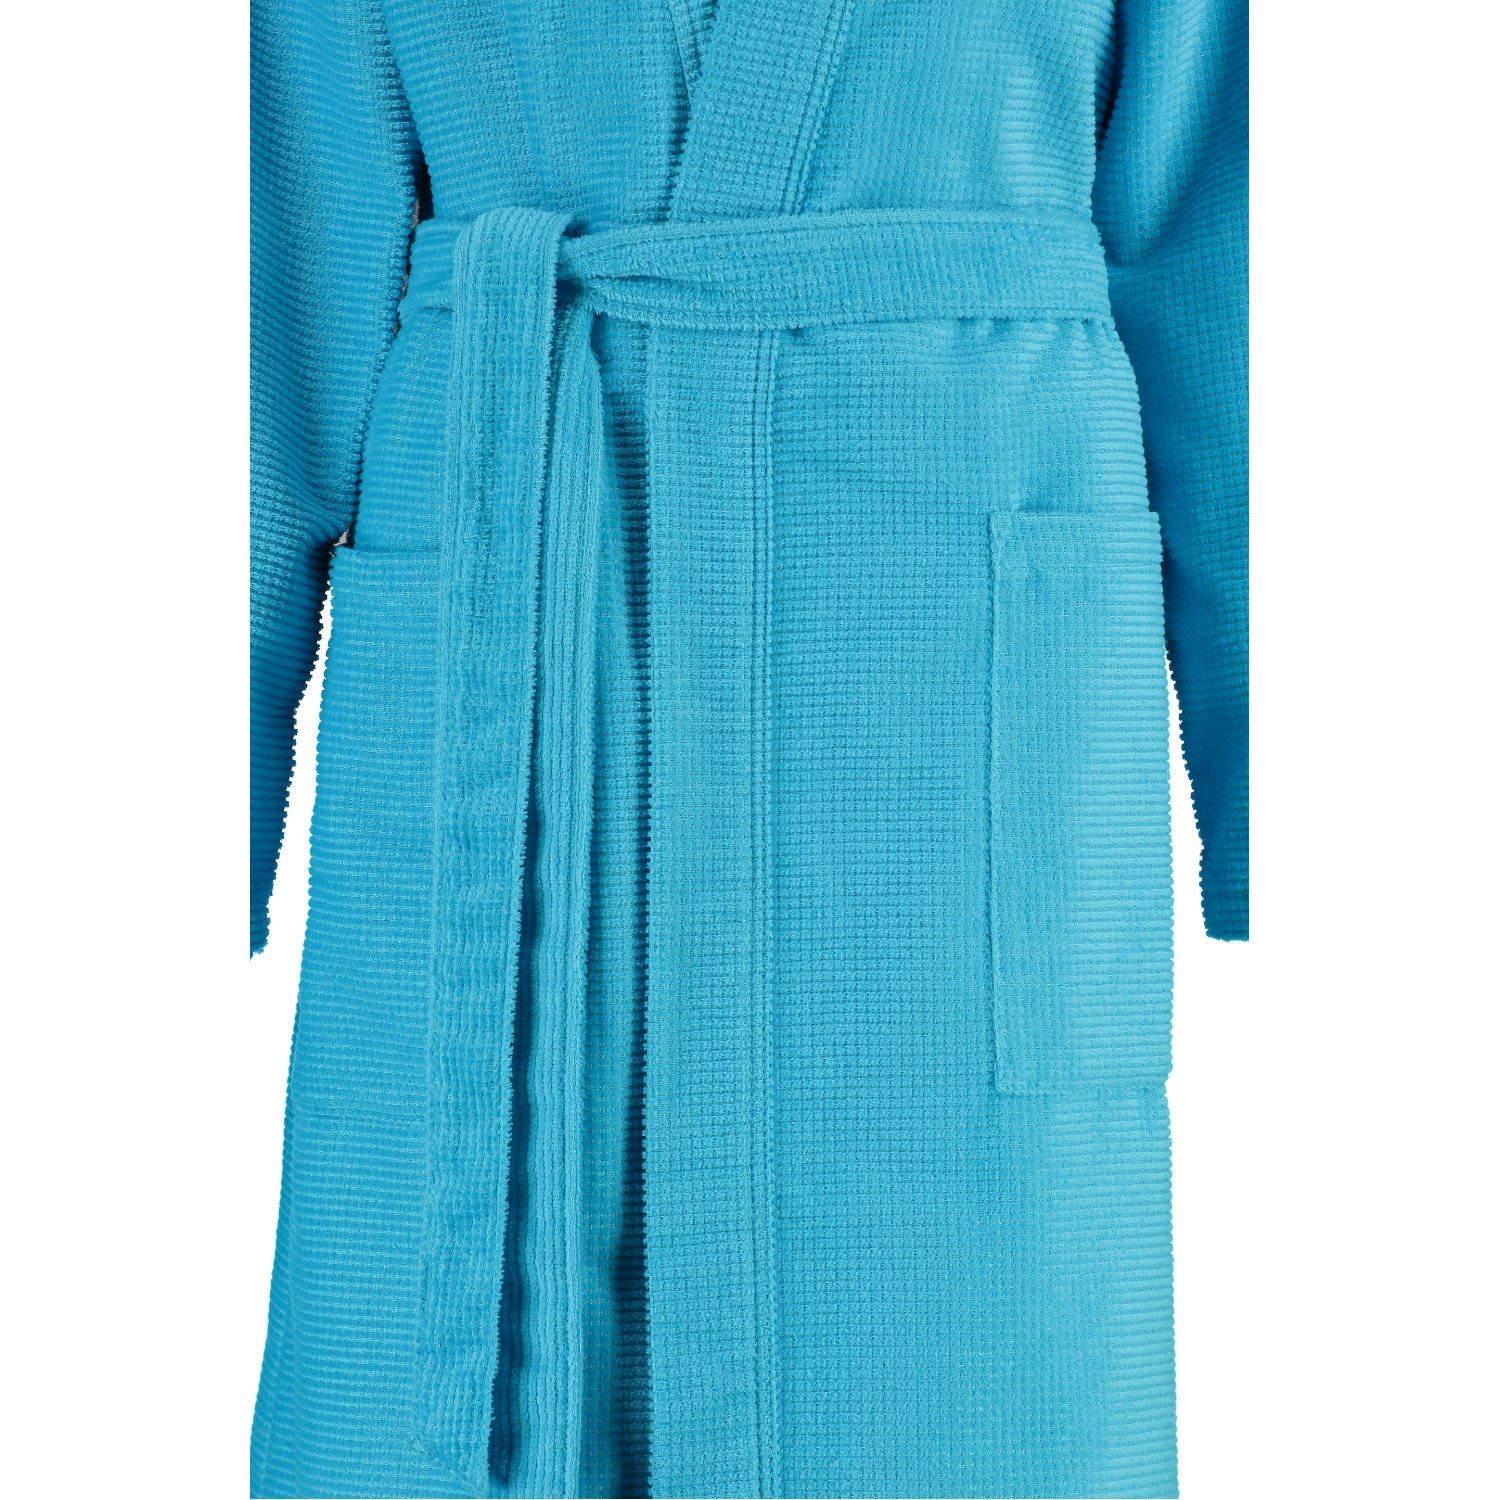 Cawö Damenbademantel, Waffelpique Kimono-Kragen, Langform, Gürtel, Qualität Baumwolle